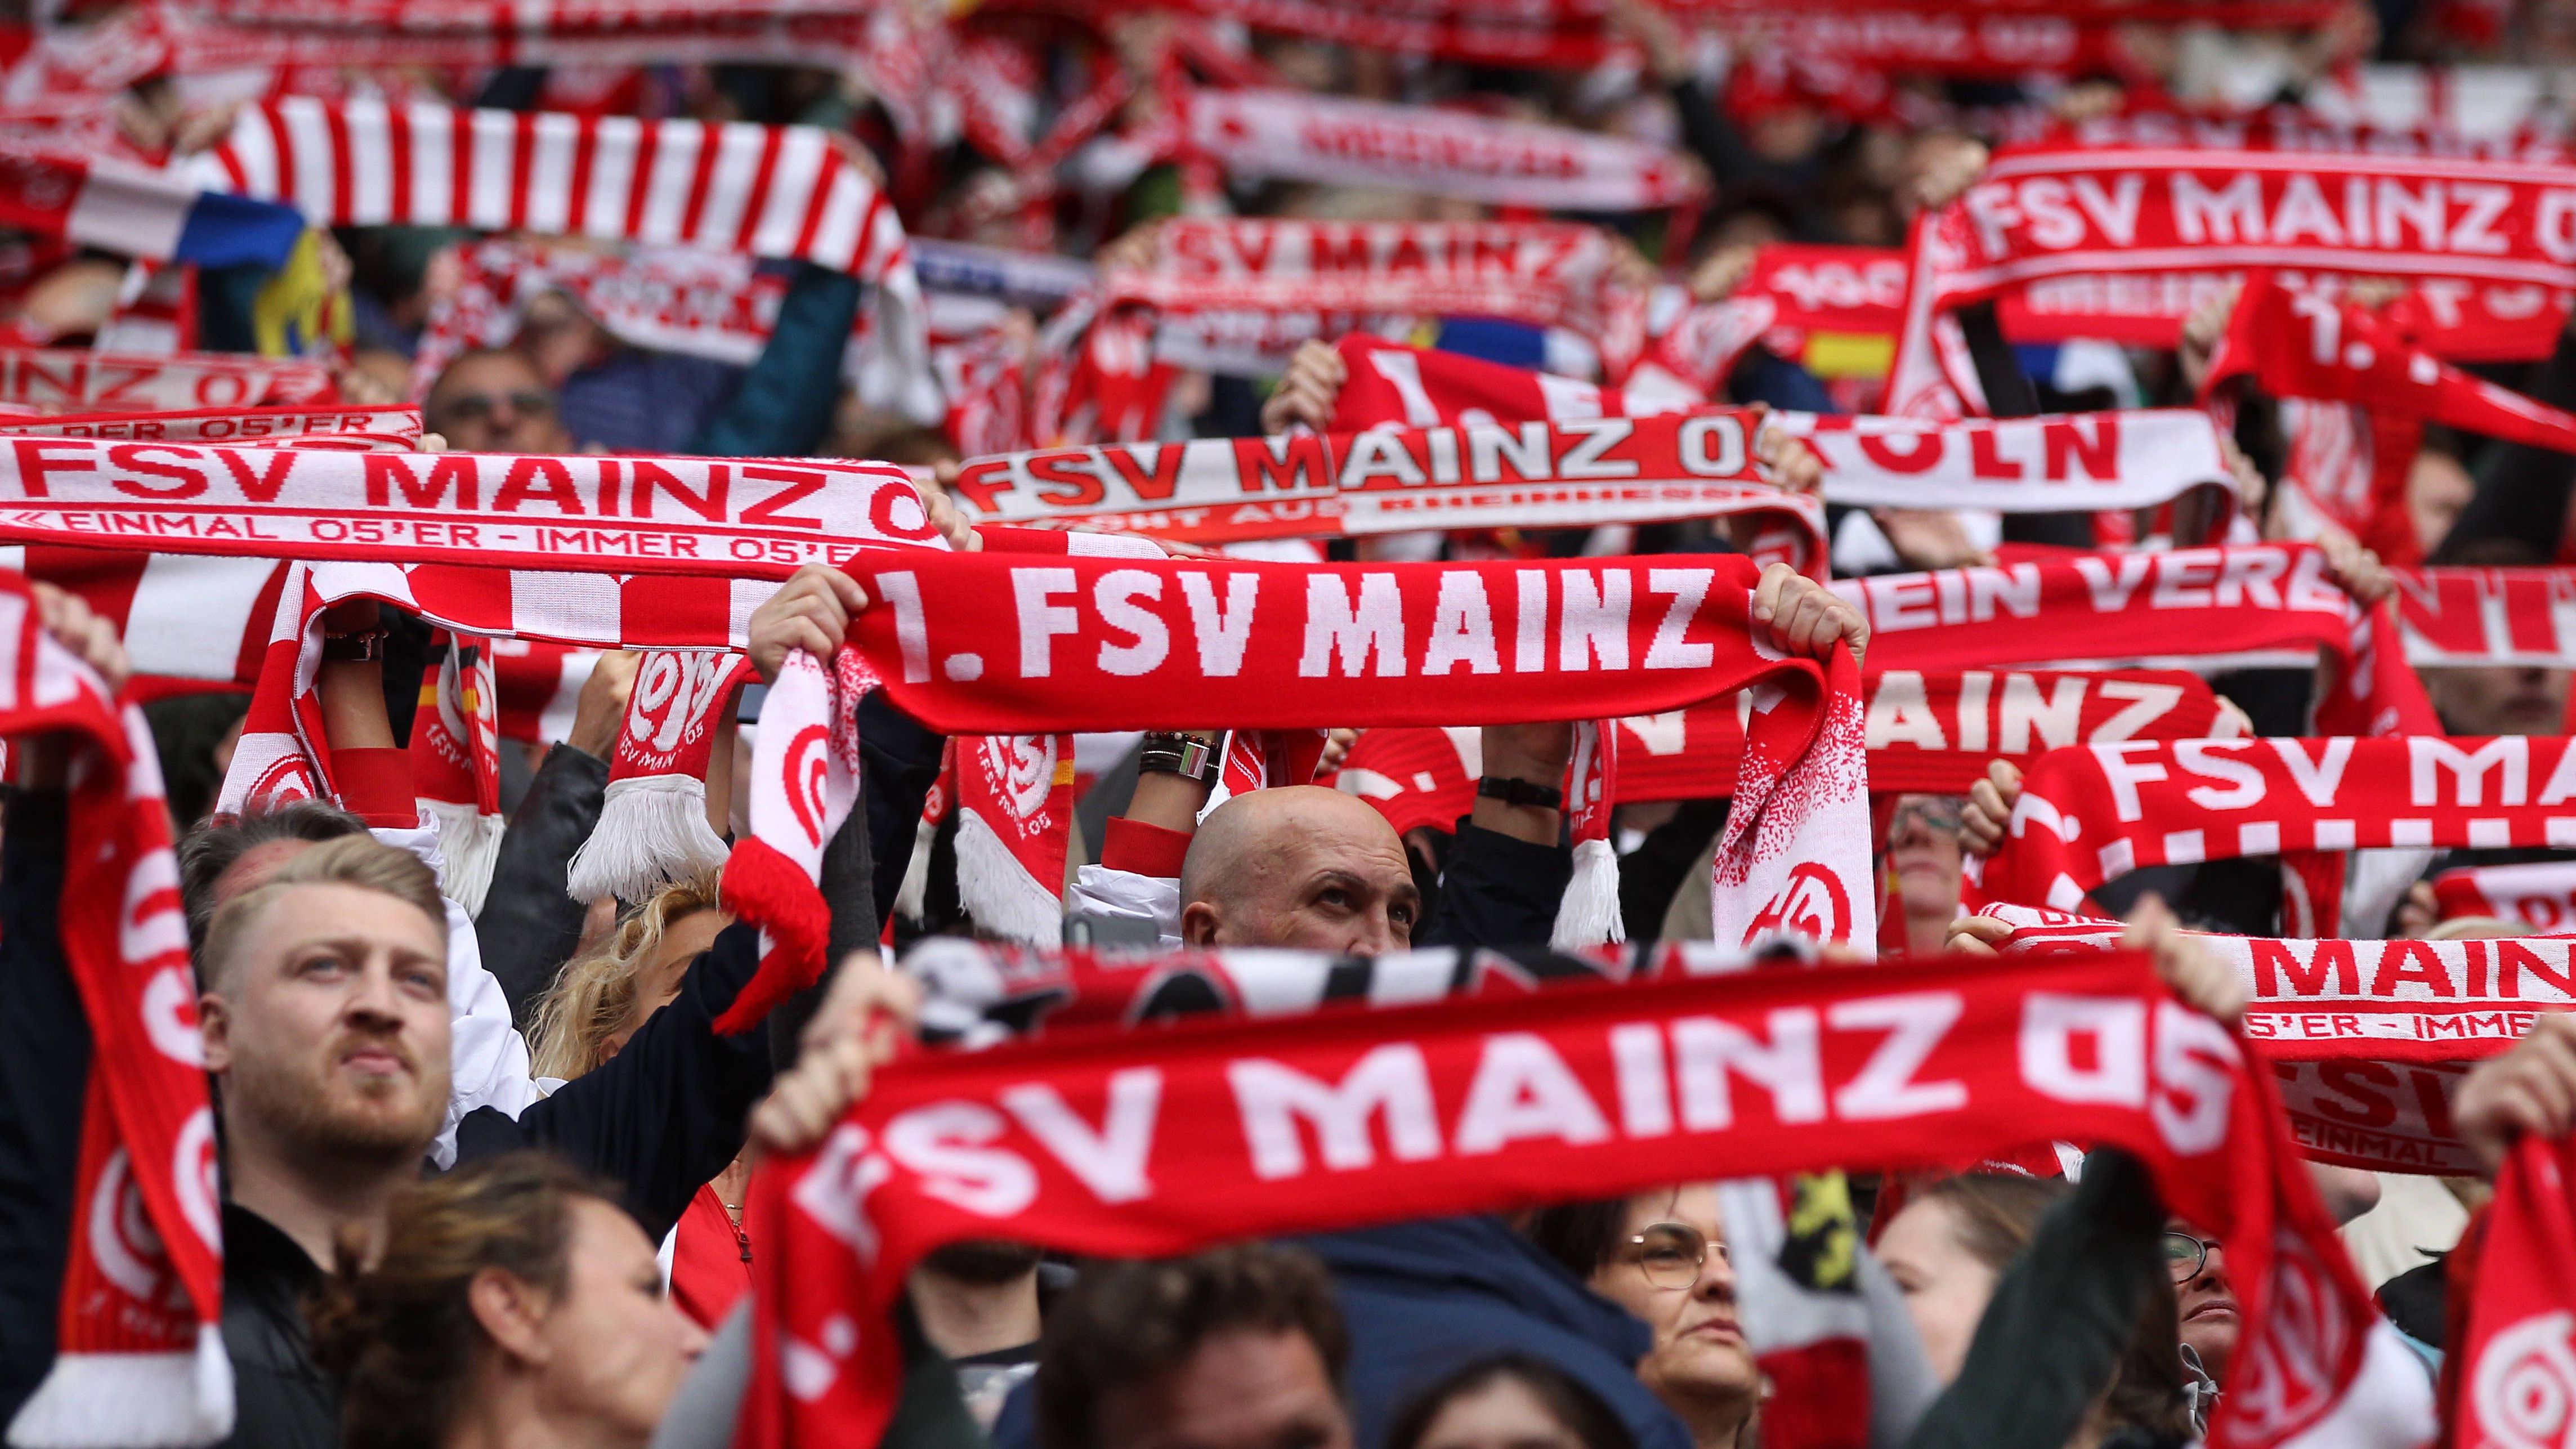 <strong>16. Platz: 1. FSV Mainz 05 (28 Punkte, -17 Tore)</strong><br>Zuletzt drehten die Mainzer ordentlich auf. Das 1:1 gegen Köln kann trotzdem als Rückschlag gewertet werden. Die Chancen auf den Klassenerhalt sind dennoch ordentlich, da mit dem BVB auch nur noch ein großer Gegner wartet. Selbst hier kann das Team aber - wie die vergangene Saison eindrucksvoll unter Beweis stellte - punkten.